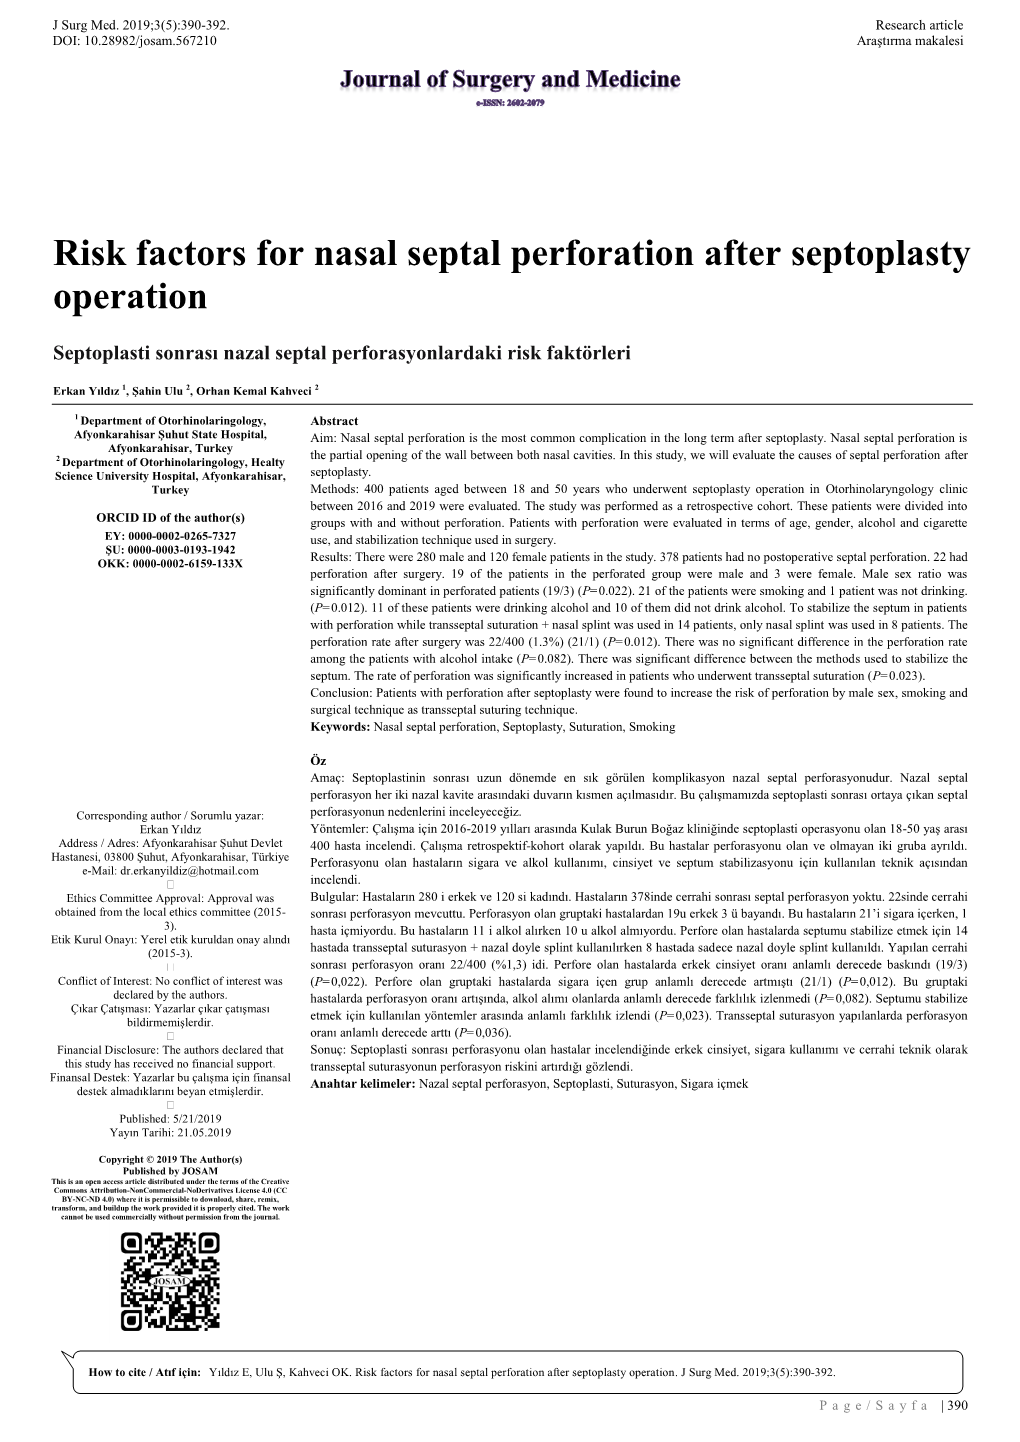 Risk Factors for Nasal Septal Perforation After Septoplasty Operation